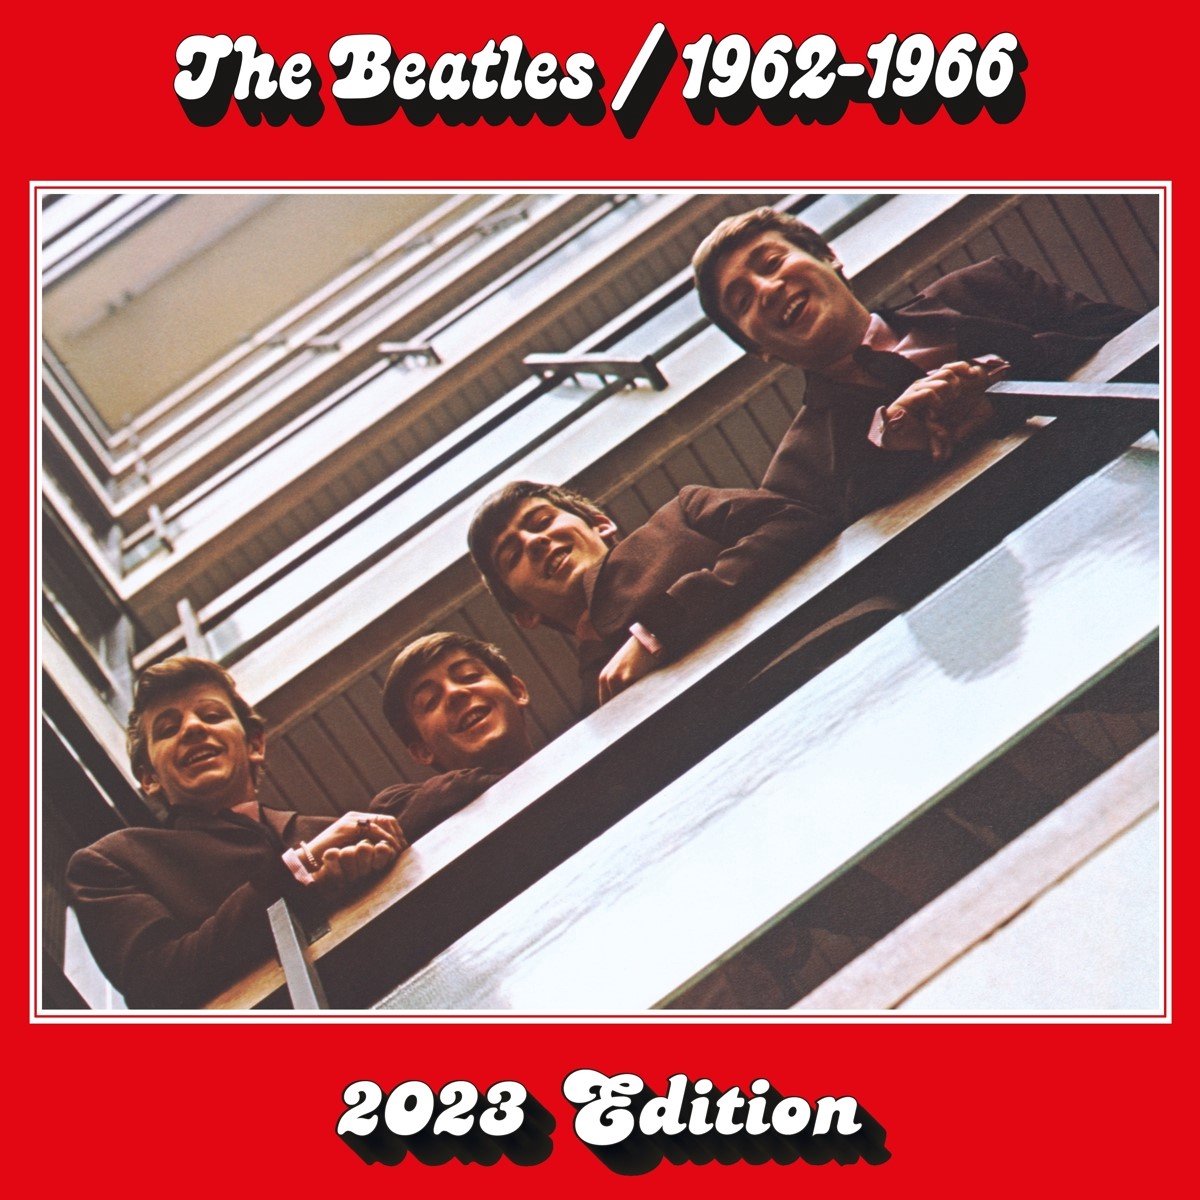 The Beatles - The Beatles 1962 - 1966 (2 CD) - The Beatles